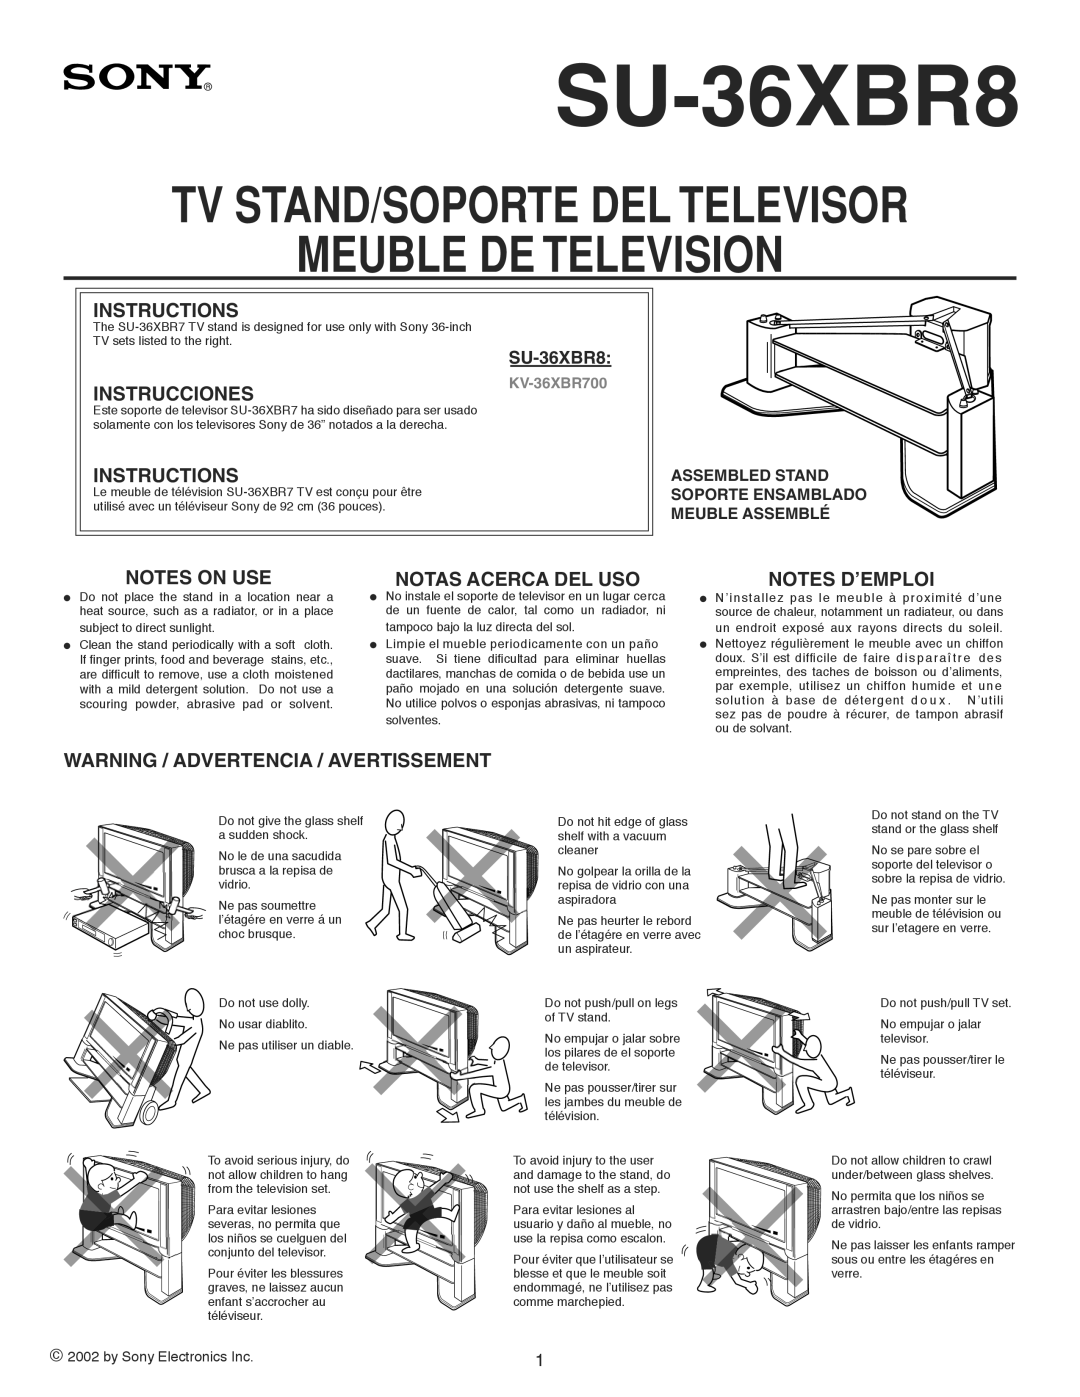 Sony SU-36XBR8 manual Tv Stand/Soporte Del Televisor, Meuble De Television, Instructions, Instrucciones, Notes On Use 